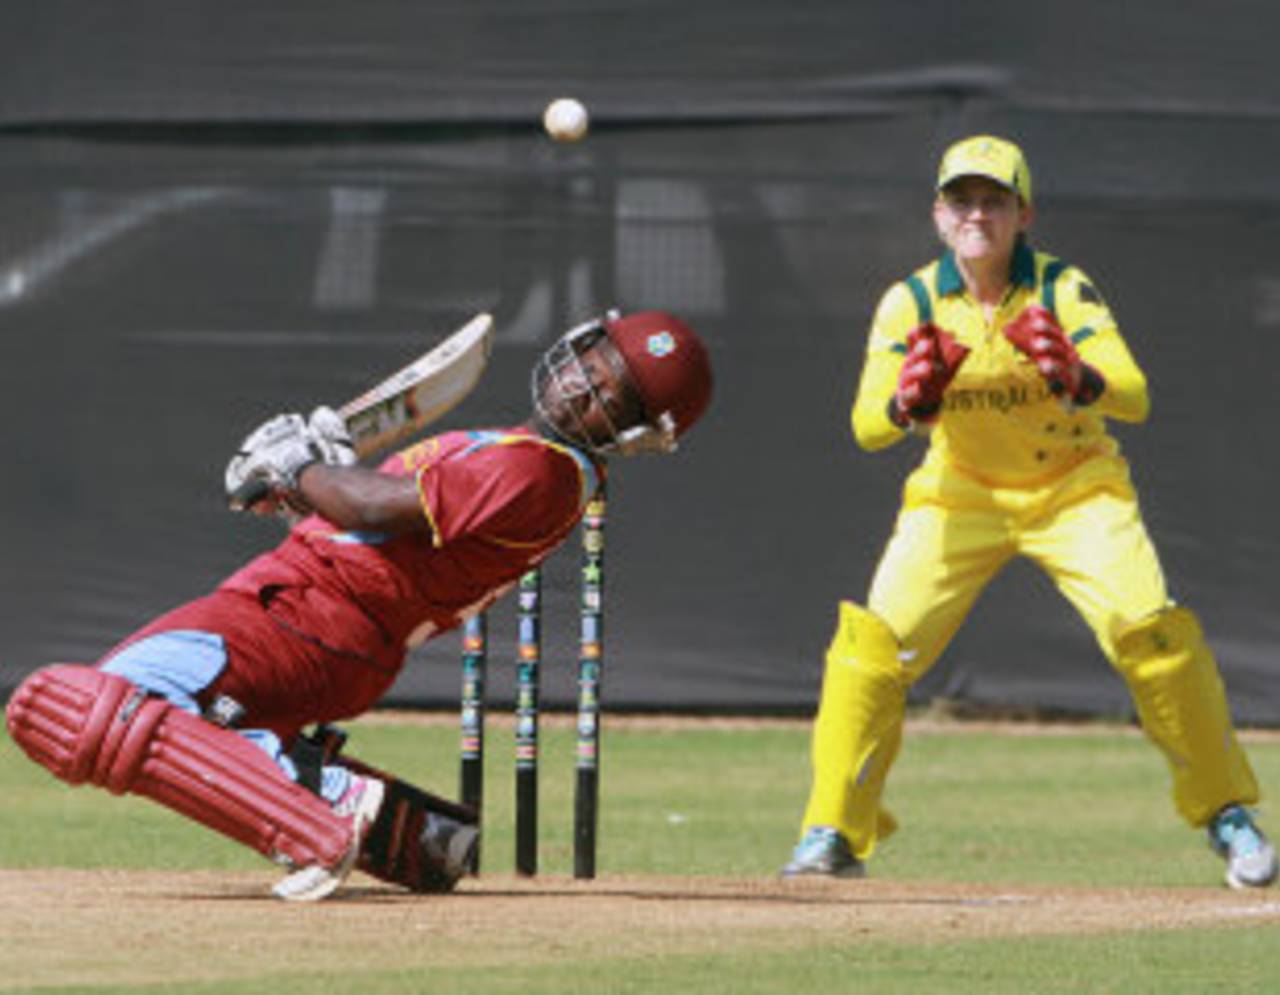 Deandra Dottin ducks under a bouncer, West Indies v Australia, Women's World Cup warm-up match, Mumbai, January 28, 2013